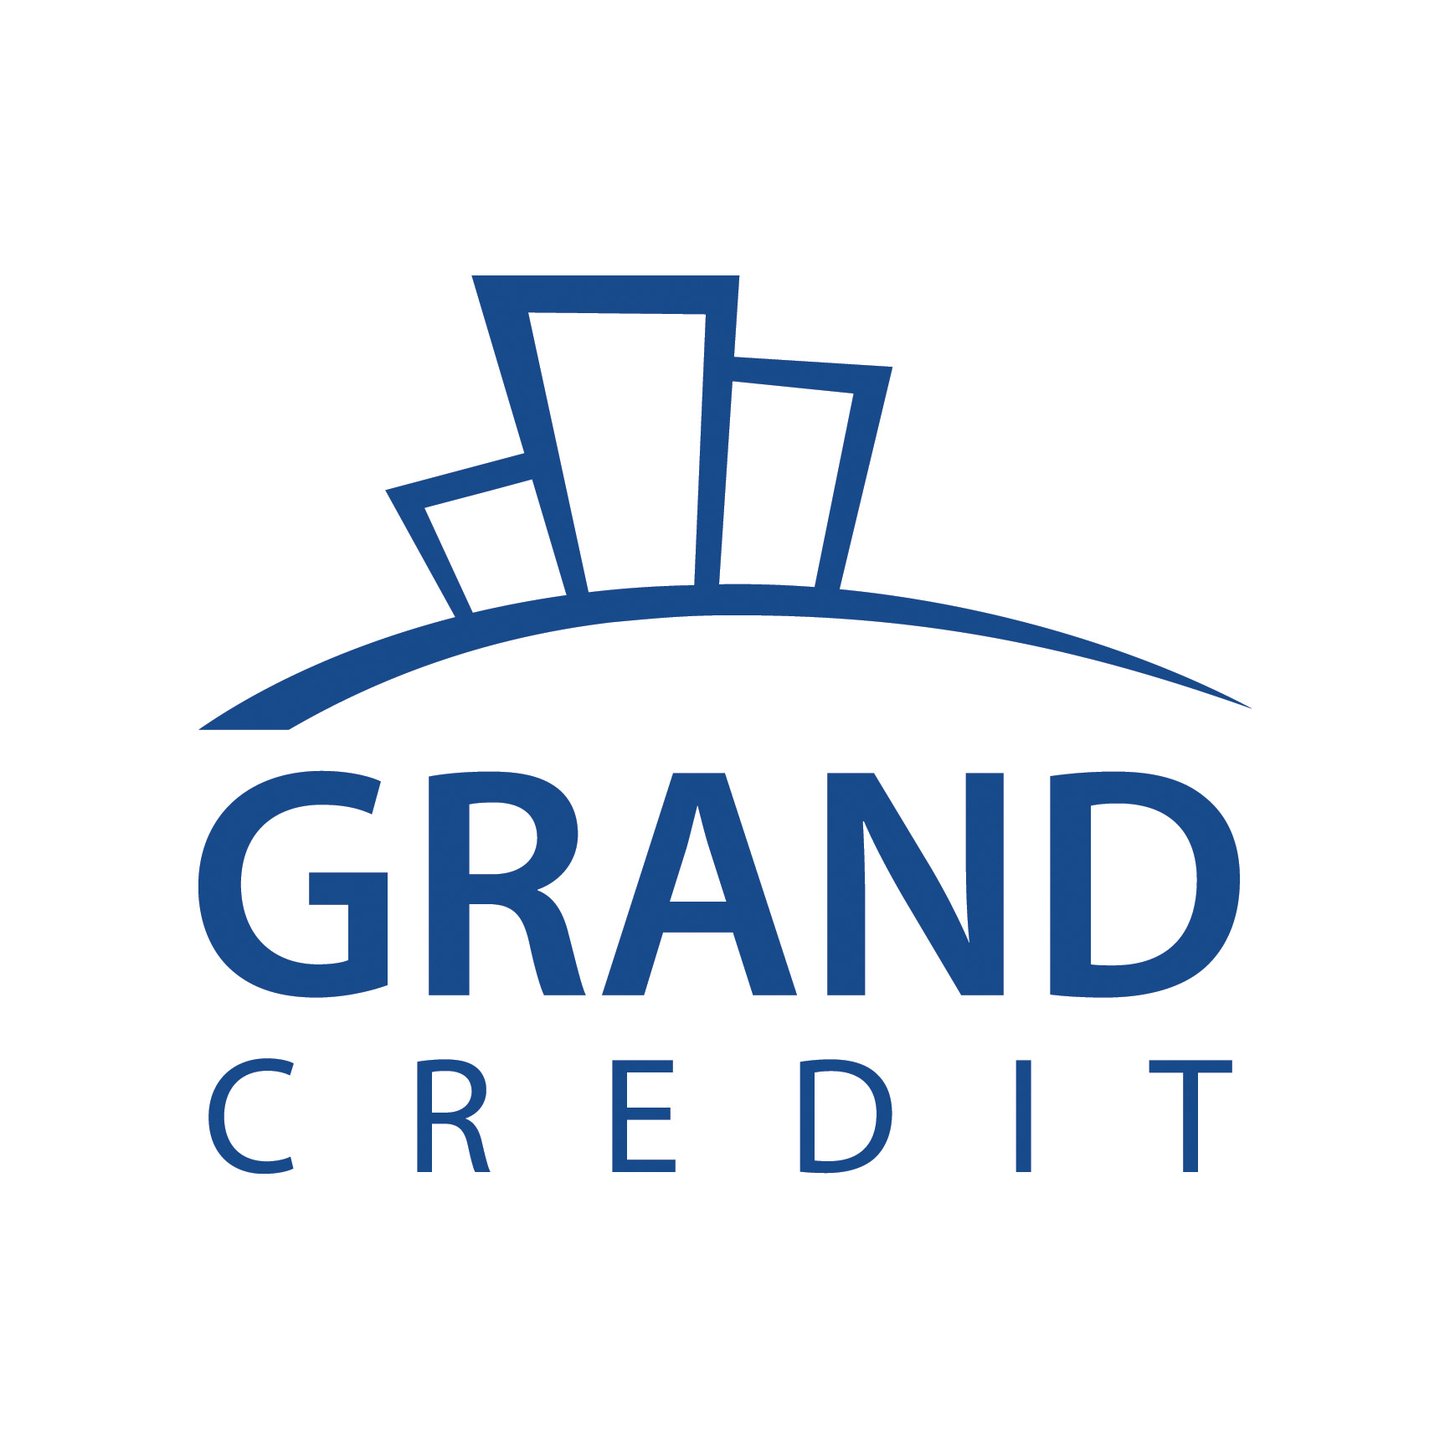 Grand Credit учавствует в 3-миллионной государственной программе поддержки малого и среднего бизнеса